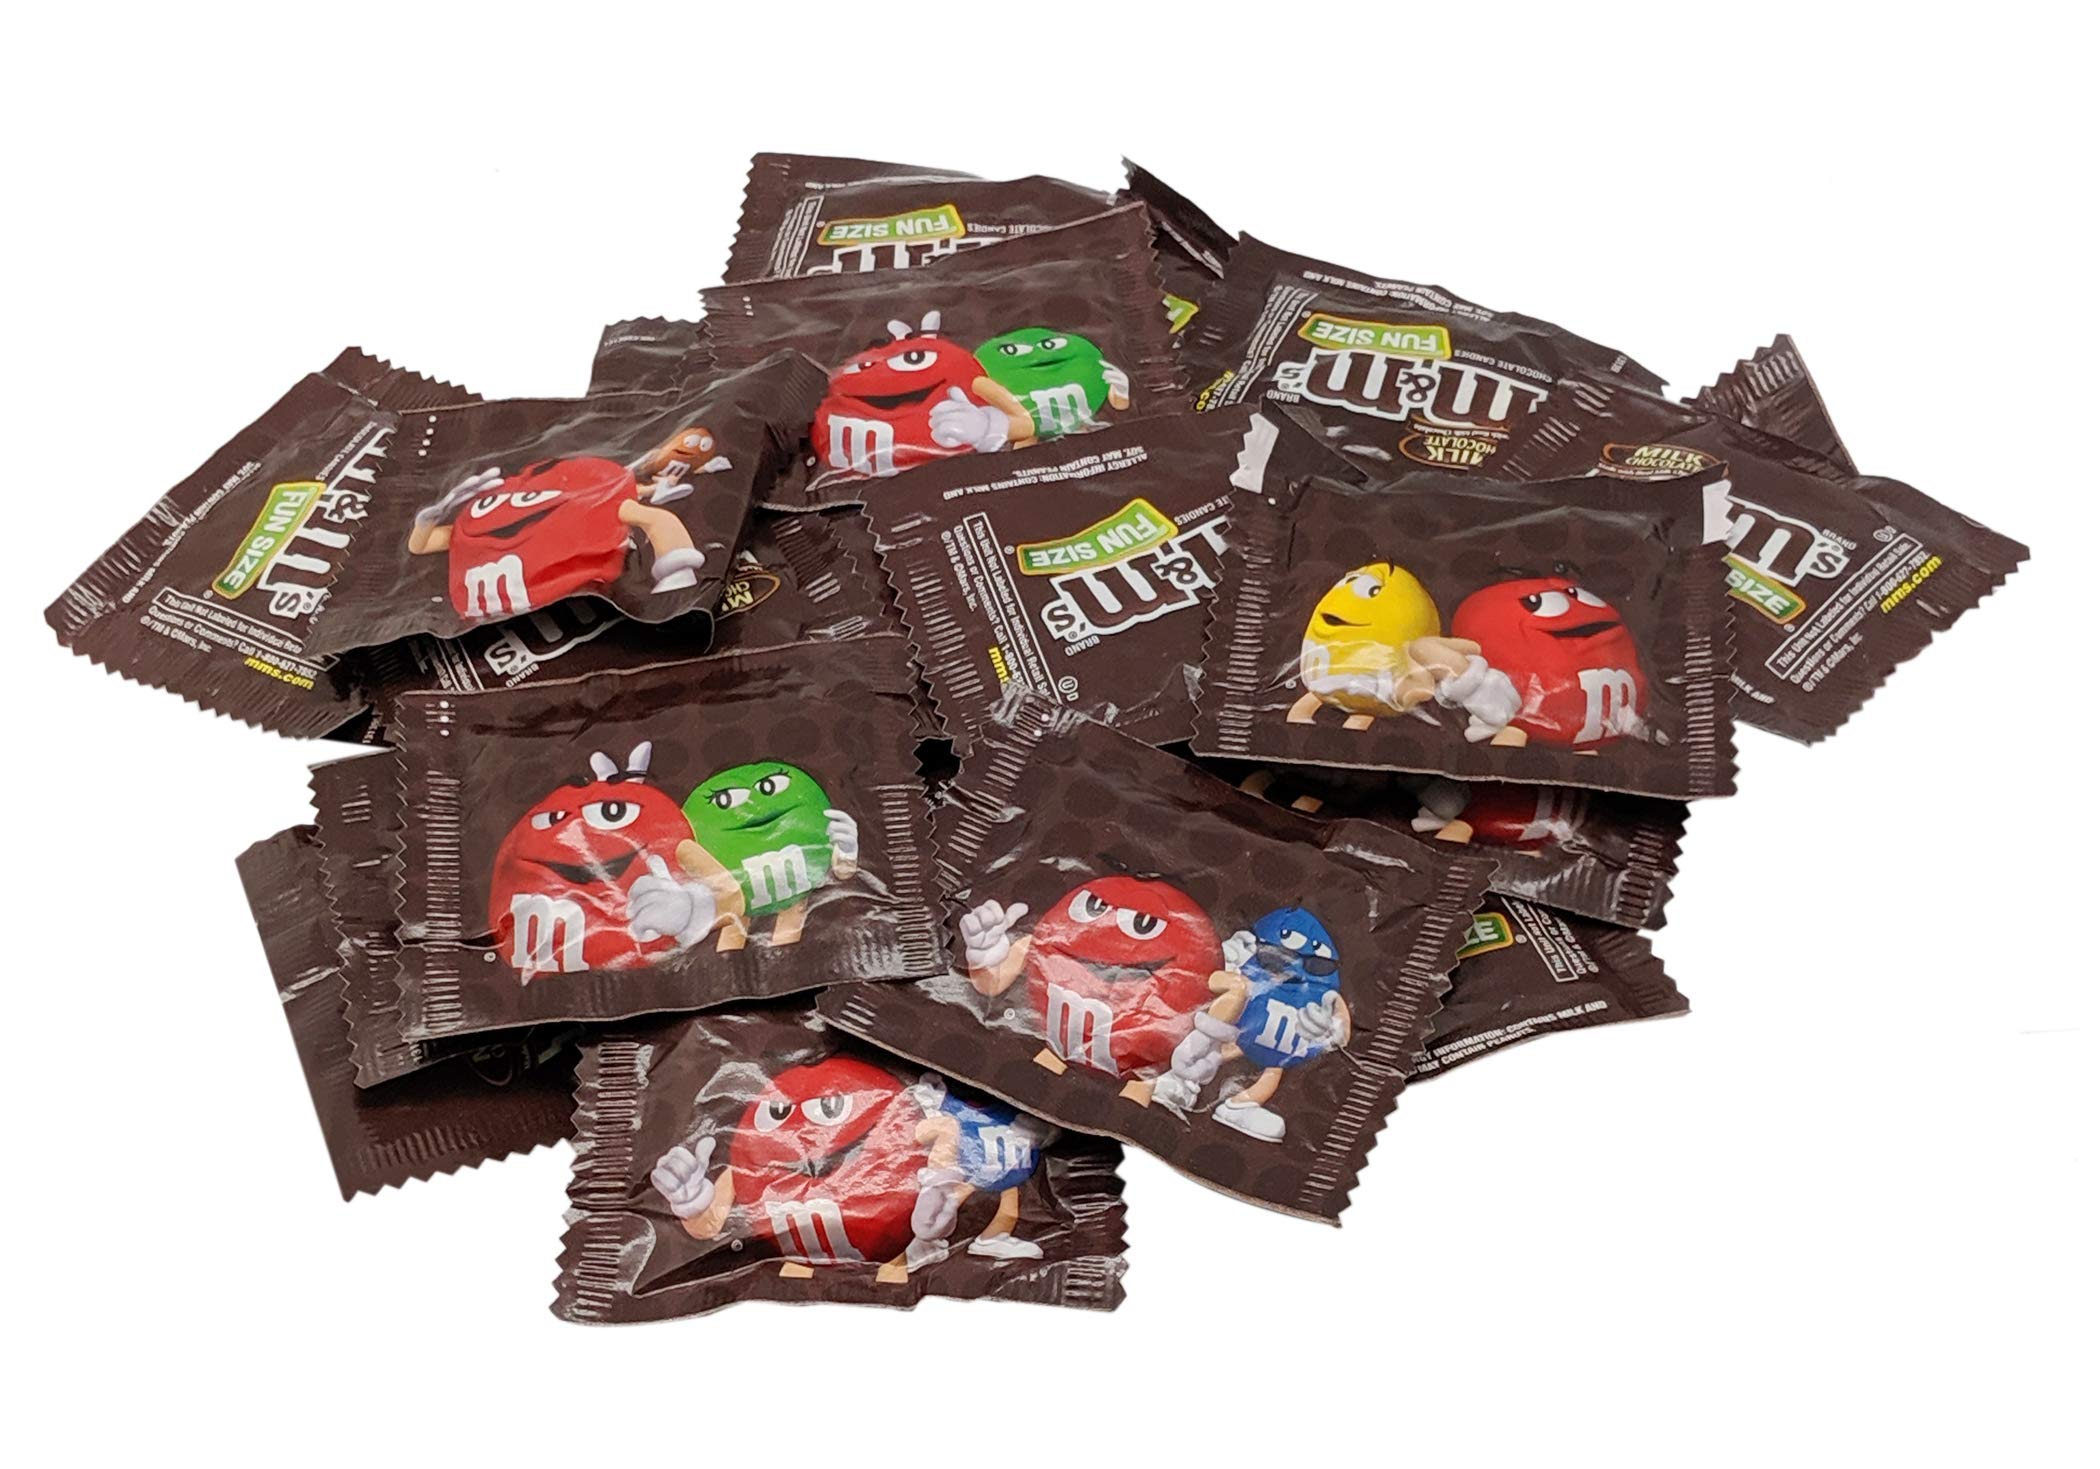 M&M's Plain Milk Chocolate Party Size Giant (2lb bag) resealable